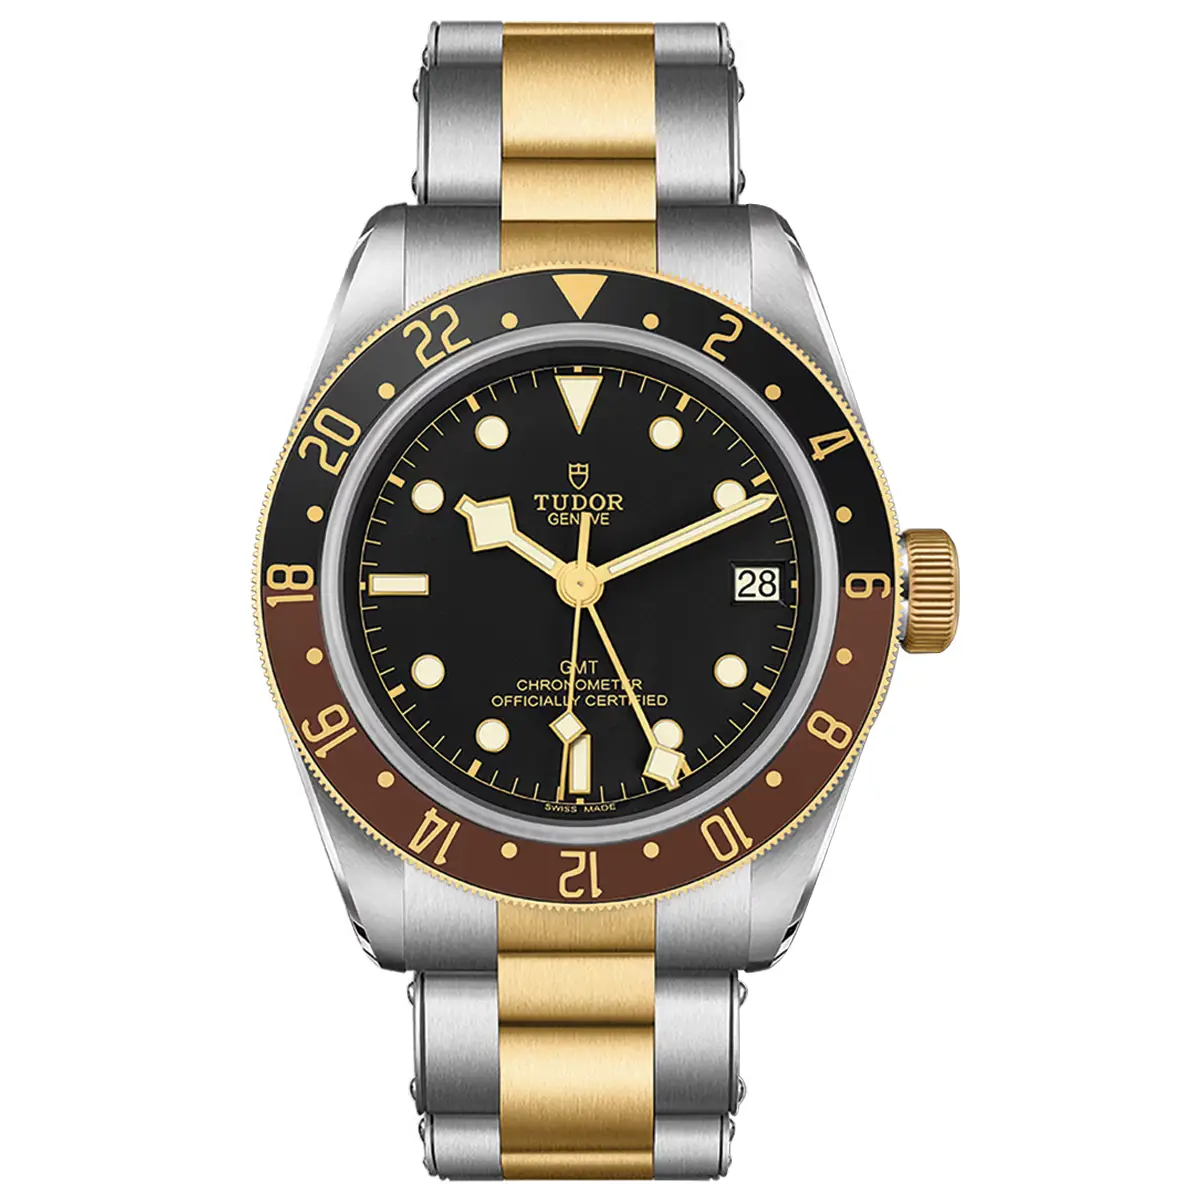 Đồng hồ Tudor Black Bay GMT S&G M79833MN-0001 mặt số màu đen. Dây đeo bằng thép. Thân vỏ bằng thép.